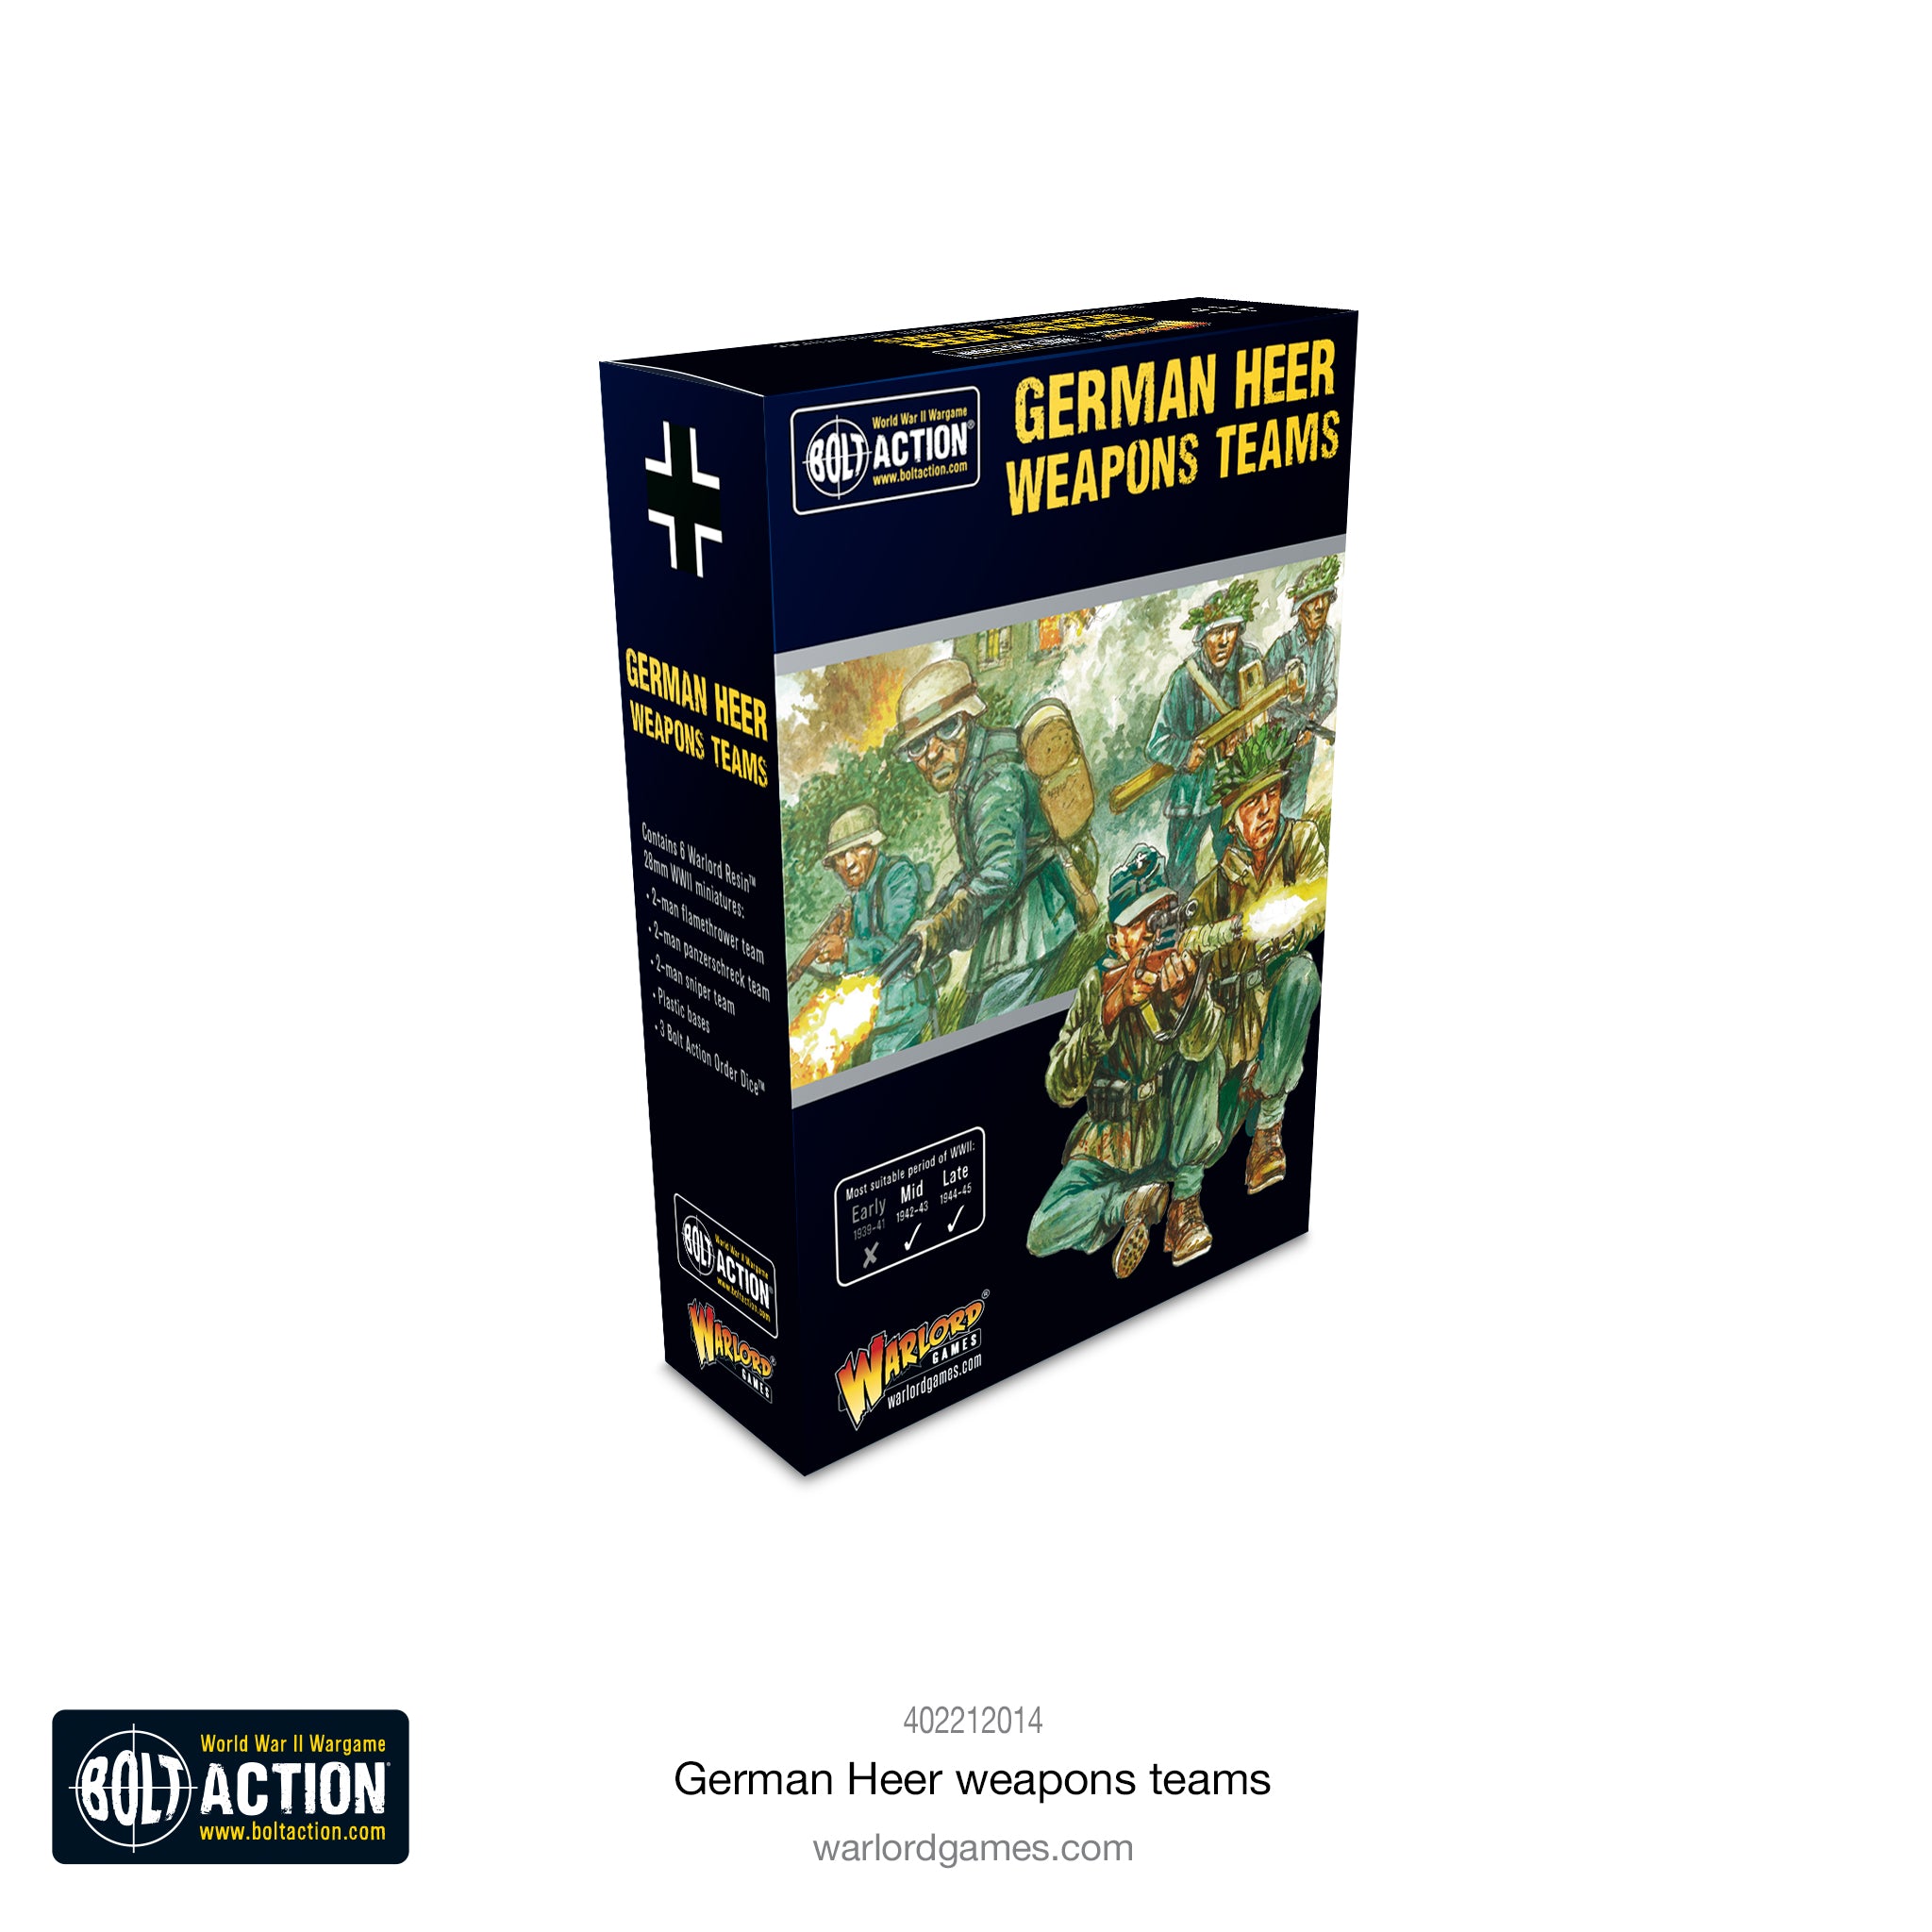 German Heer weapons teams